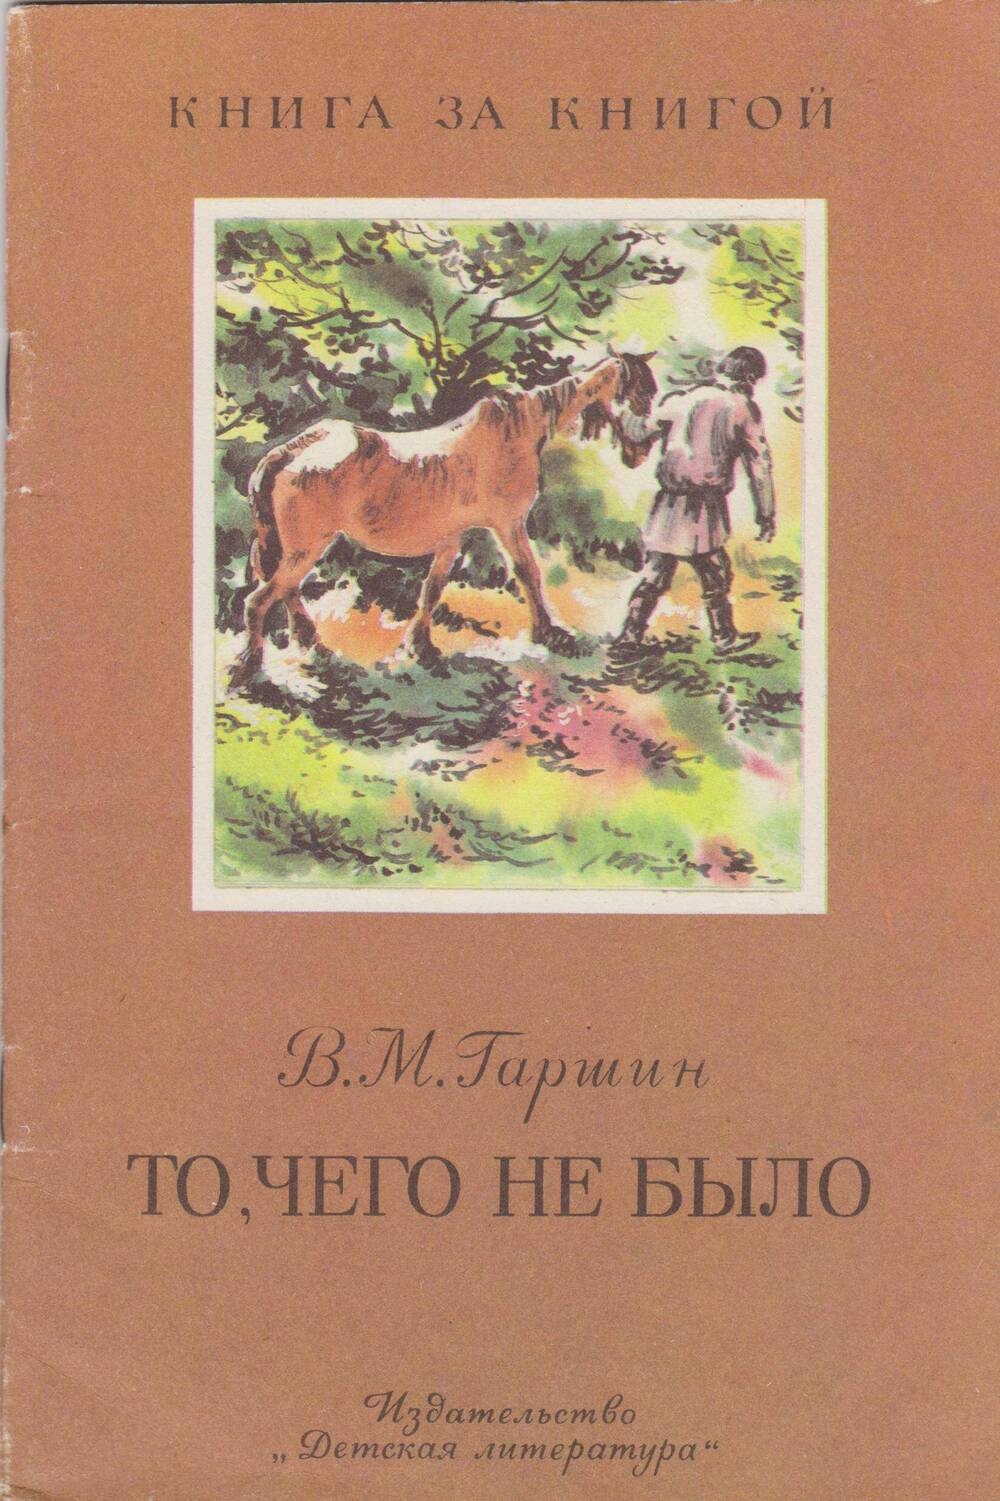 Книга «Весна». Авторы Майков, Тютчев